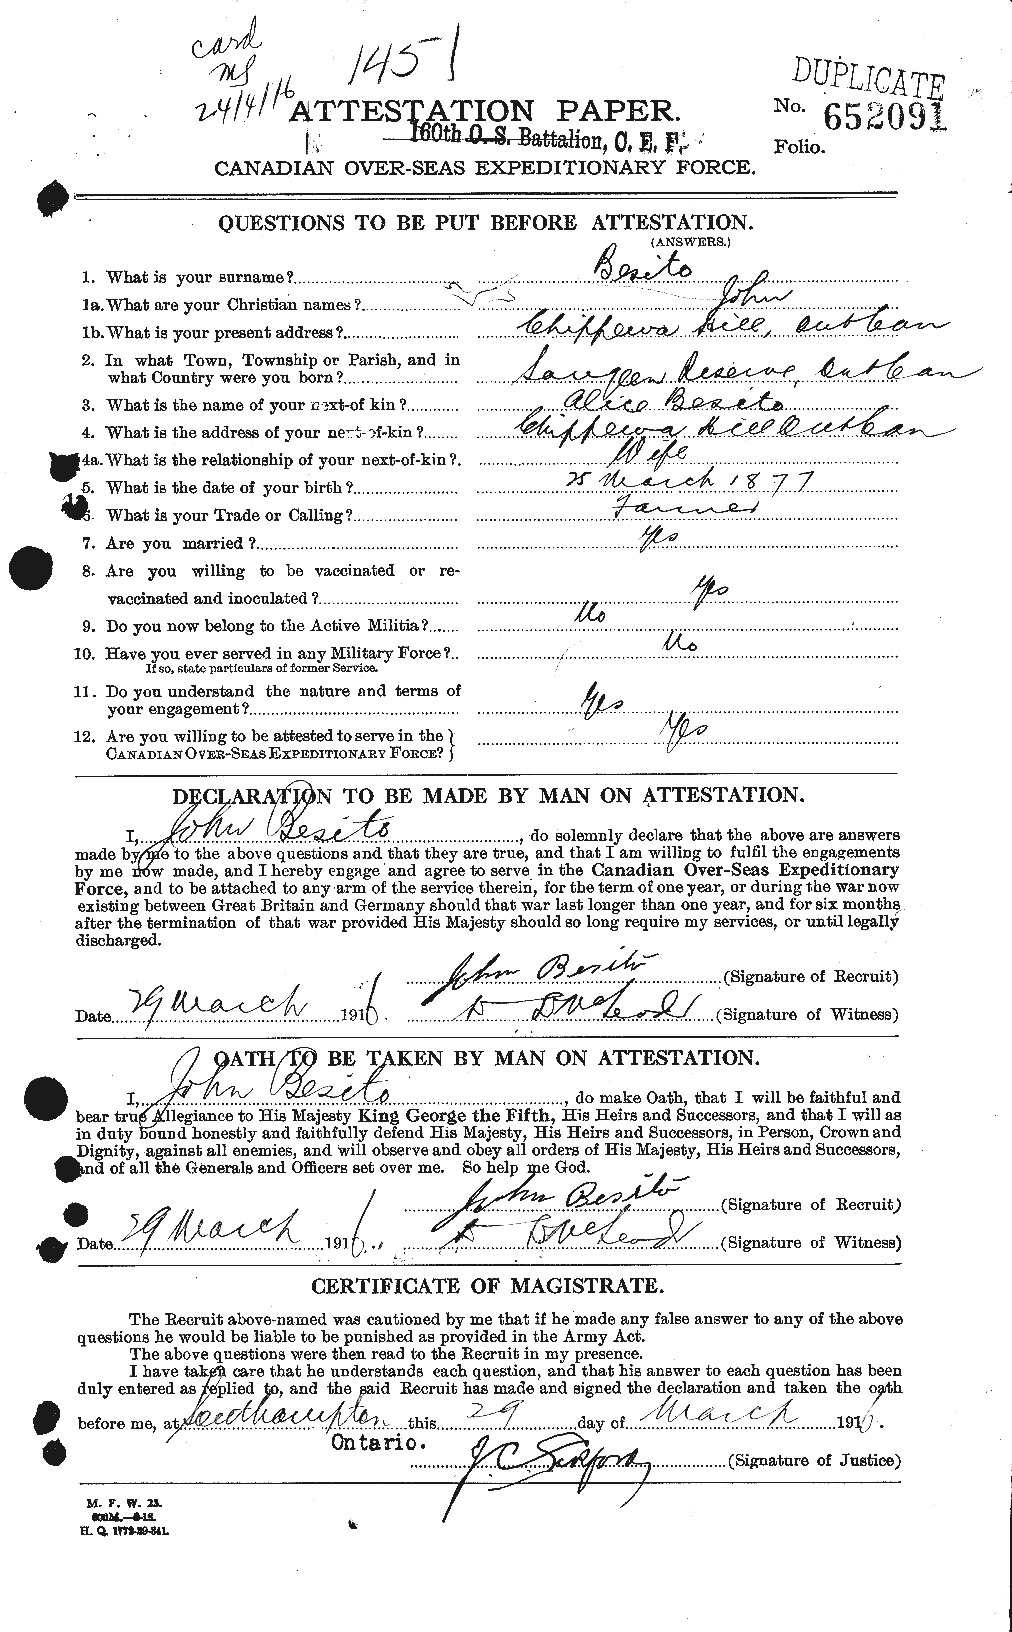 Dossiers du Personnel de la Première Guerre mondiale - CEC 240114a